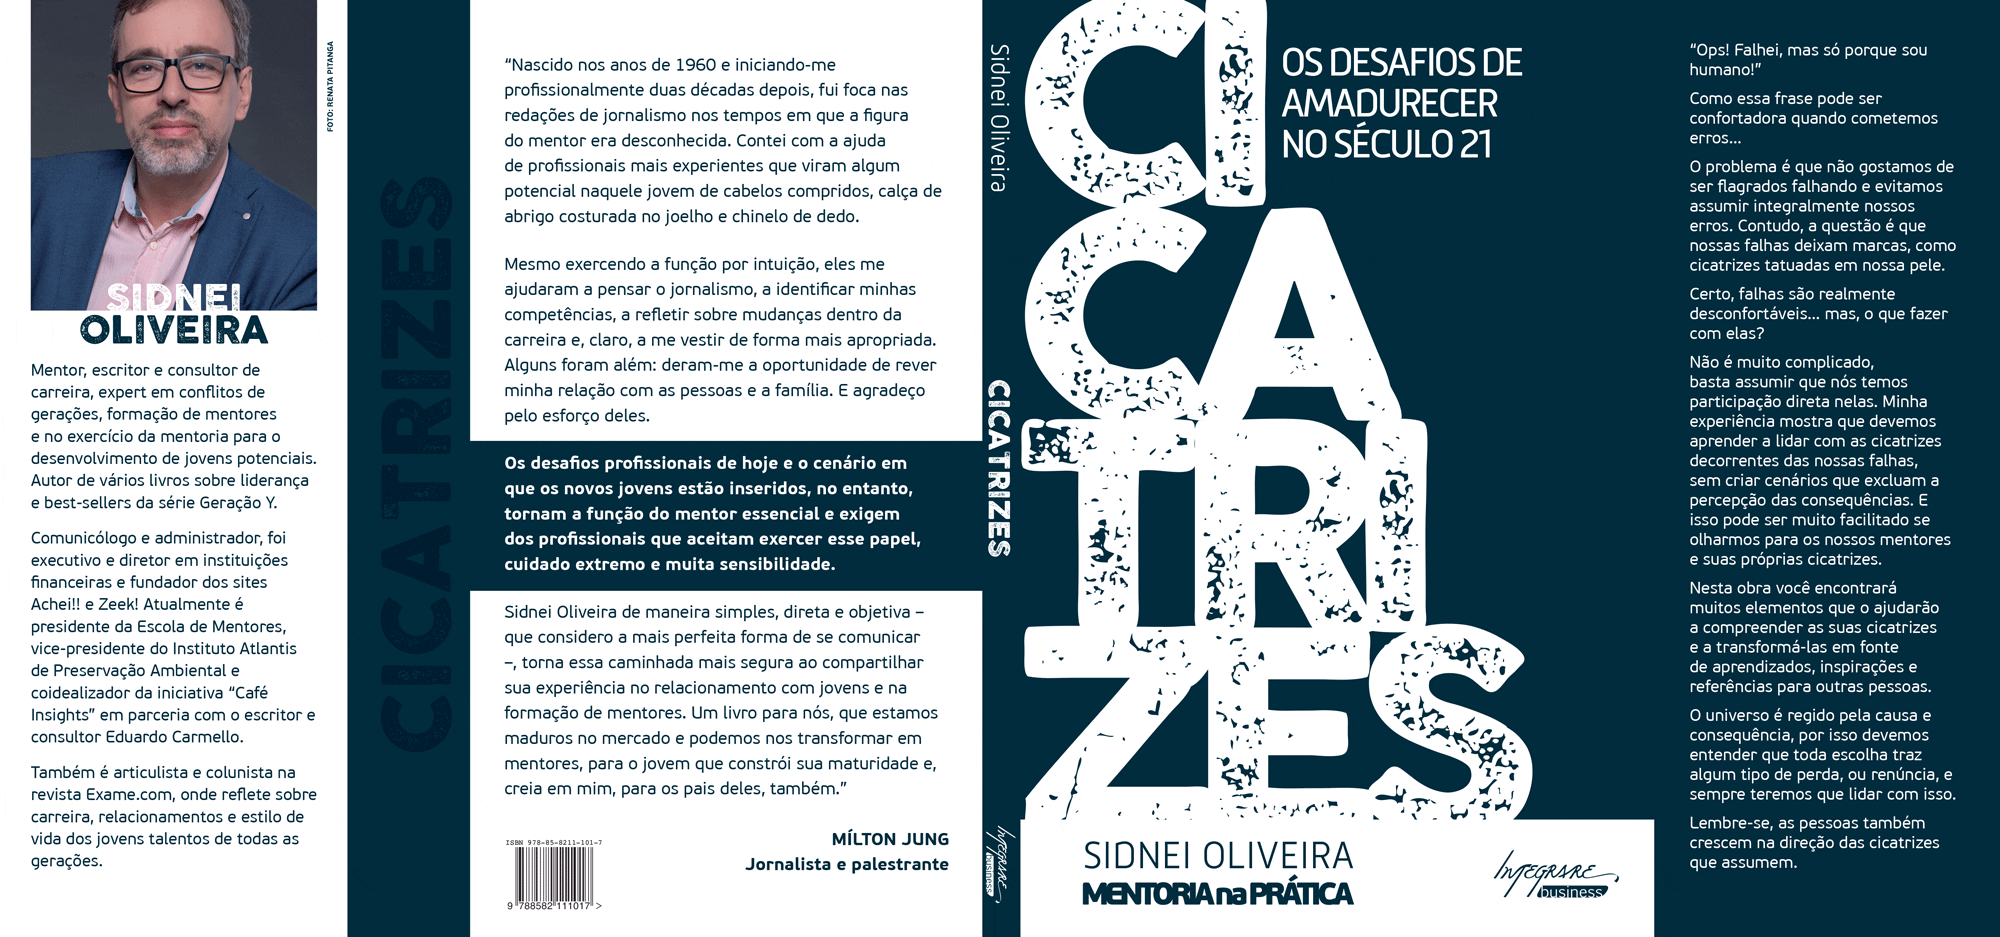 Capa do livro "Cicatrizes" de Sidnei Oliveira